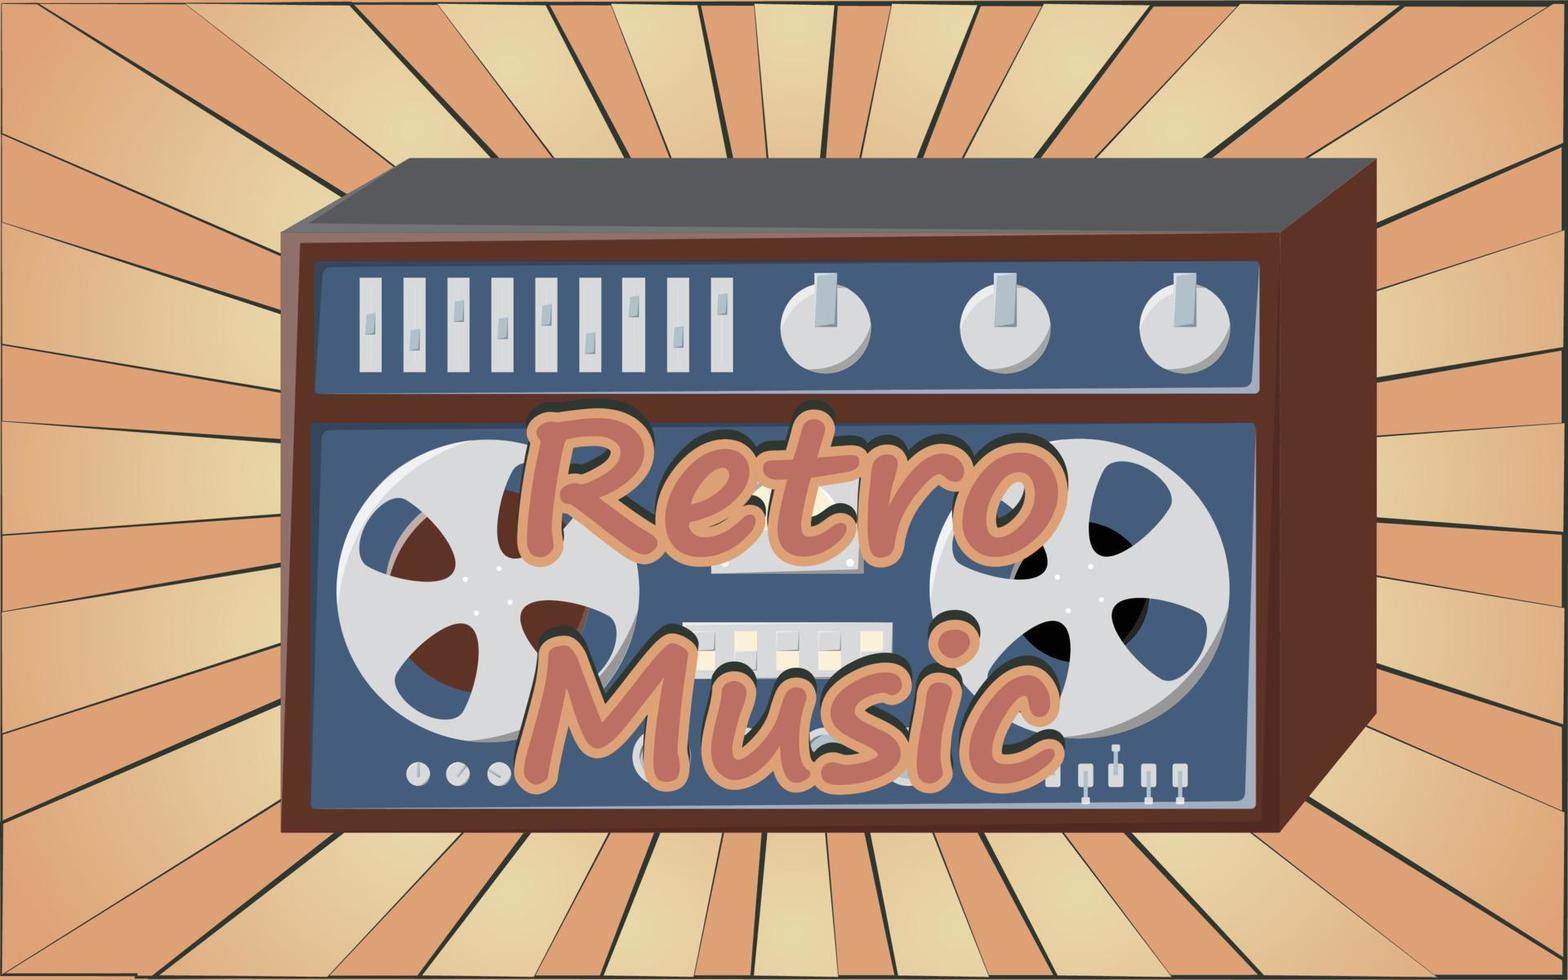 oud retro wijnoogst poster met muziek- cassette plakband opnemer met magnetisch plakband babbel Aan haspels en luidsprekers van de jaren 70, jaren 80, 90s de achtergrond van de bruin stralen van de zon. vector illustratie